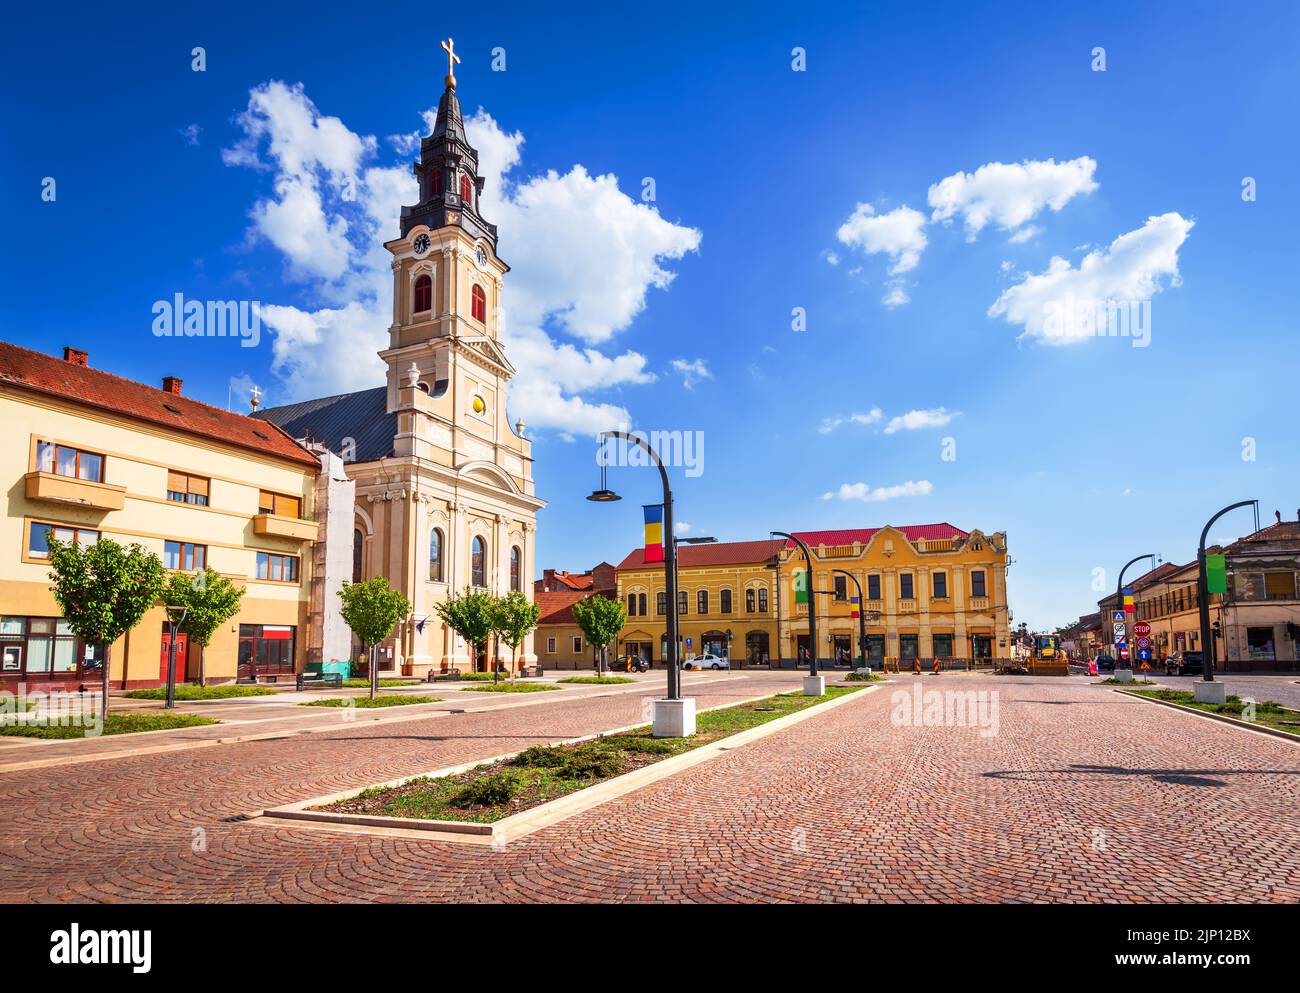 Oradea, Crisana. Union Square im Westen Siebenbürgens, Rumänien. Sommer Sonnenlicht Reise Ort. Stockfoto